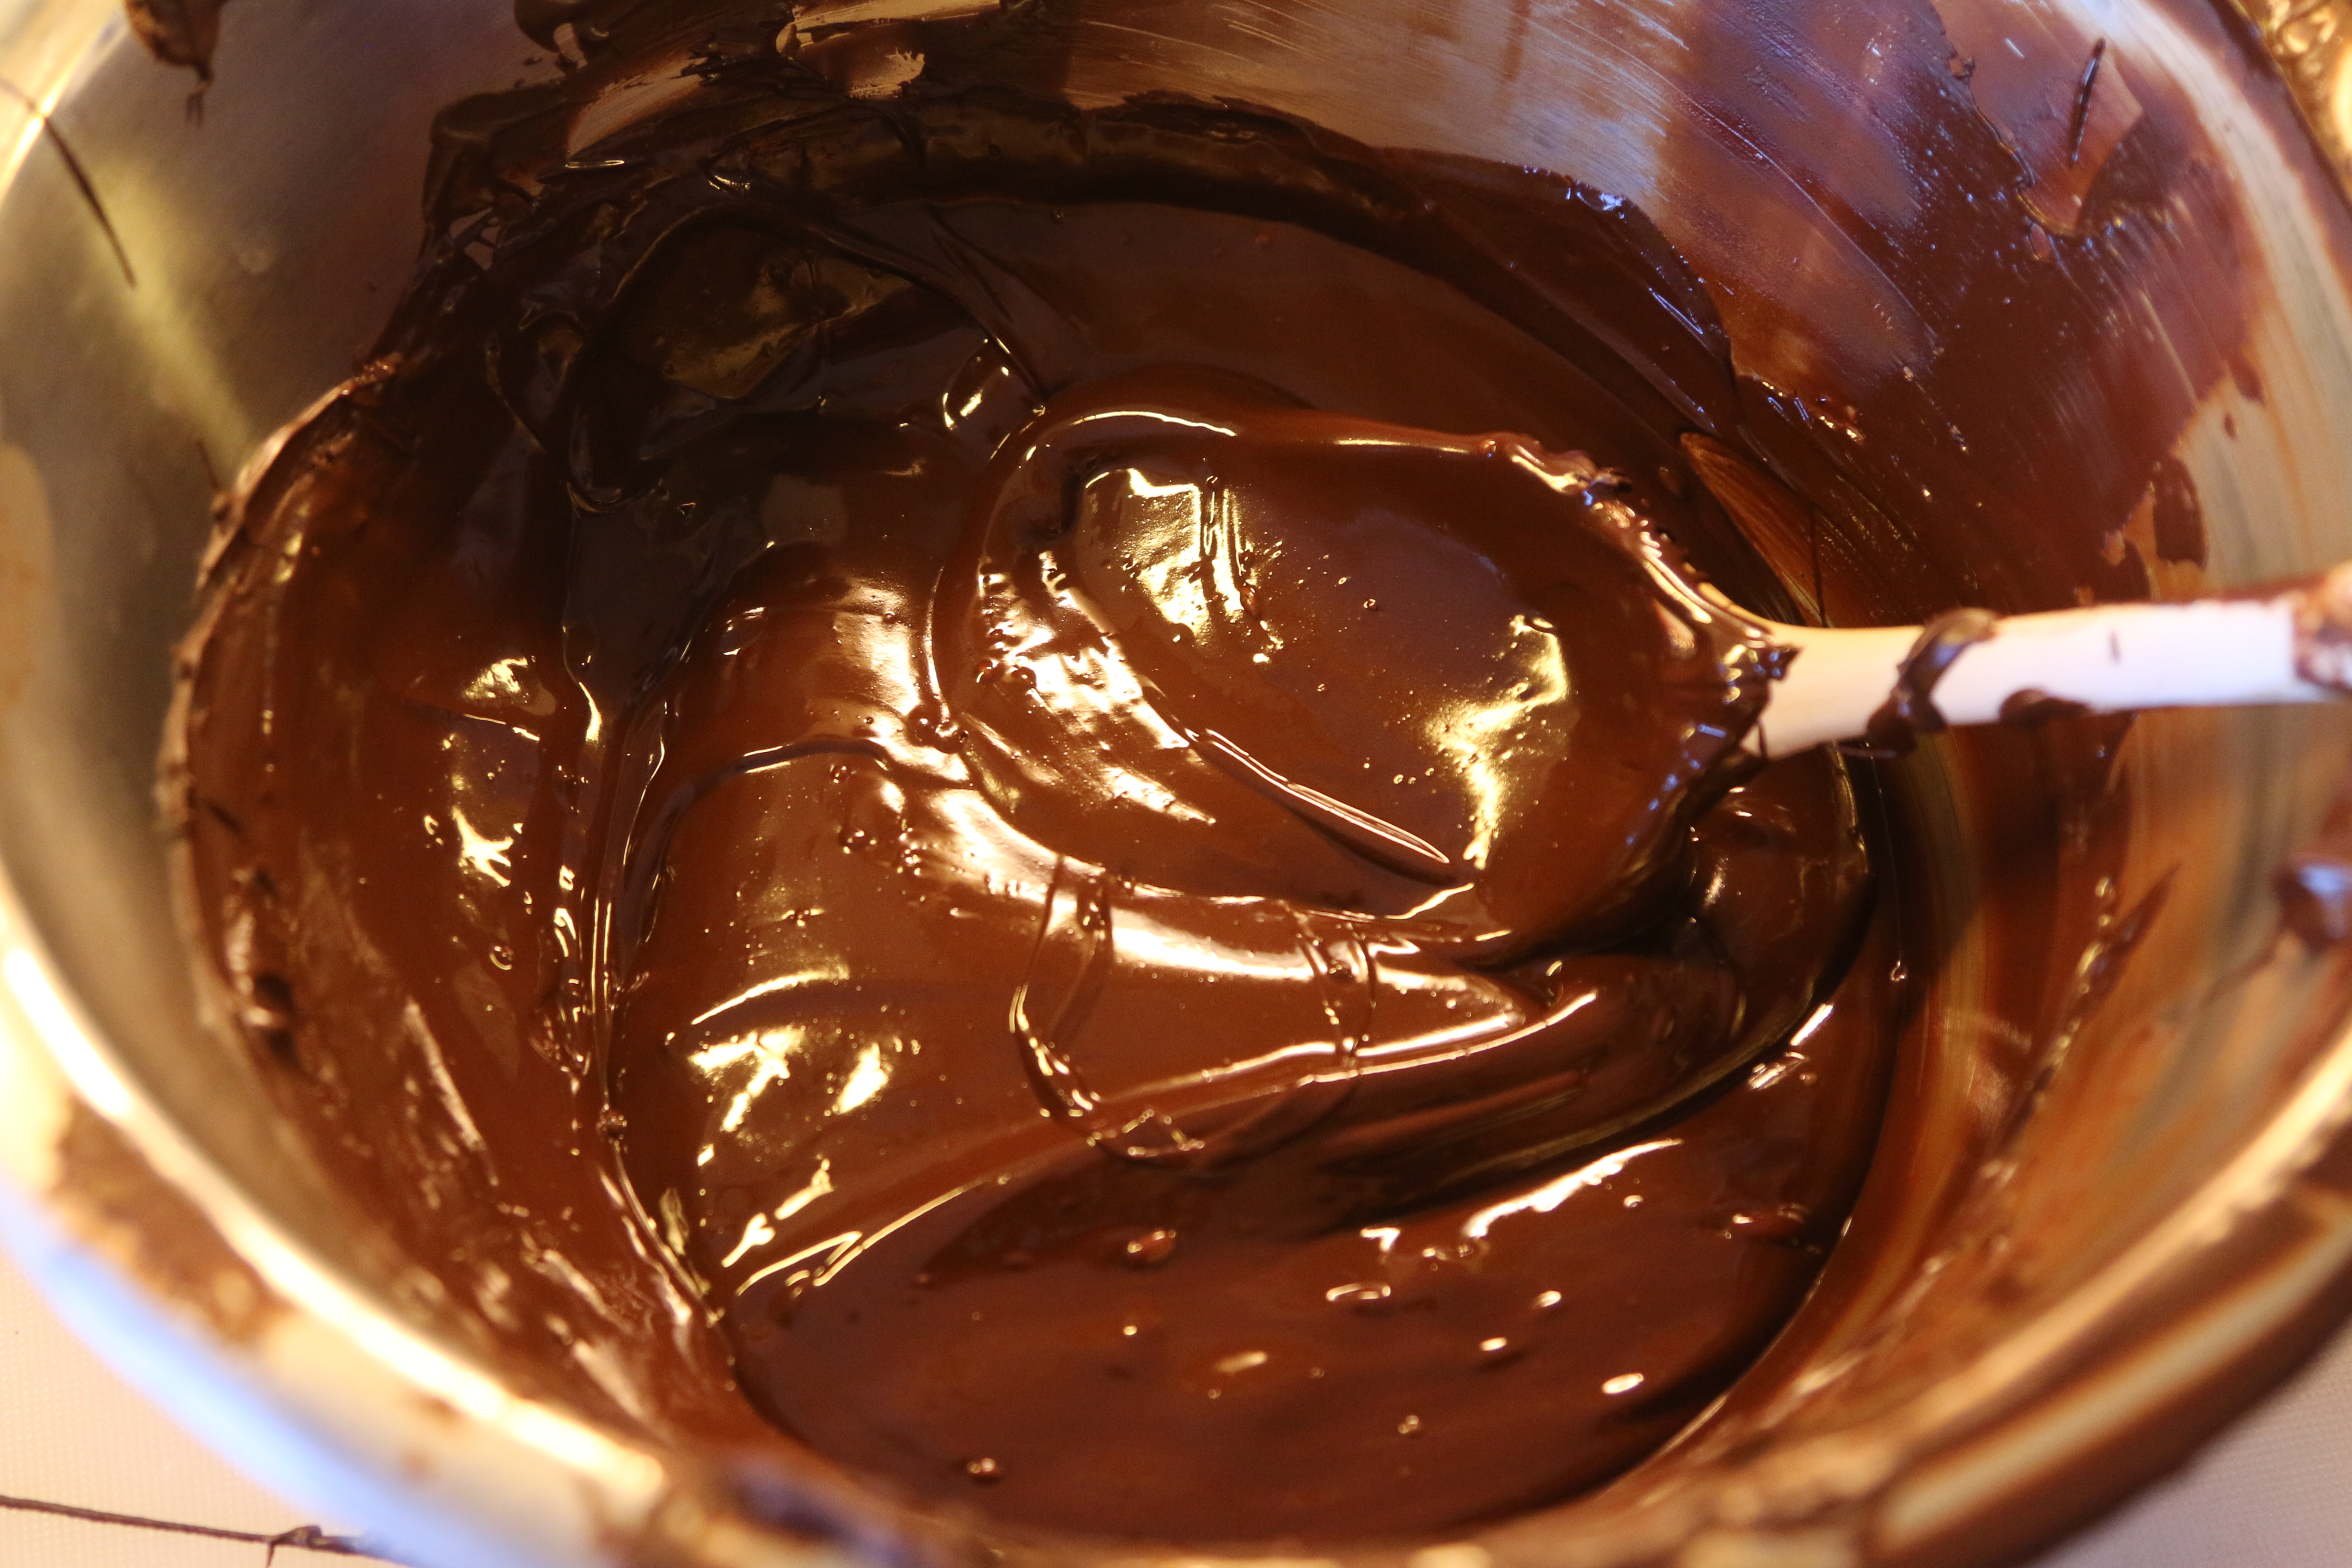 Chokolade: Rengøring, holdbarhed, opbevaring og “undgå madspild”